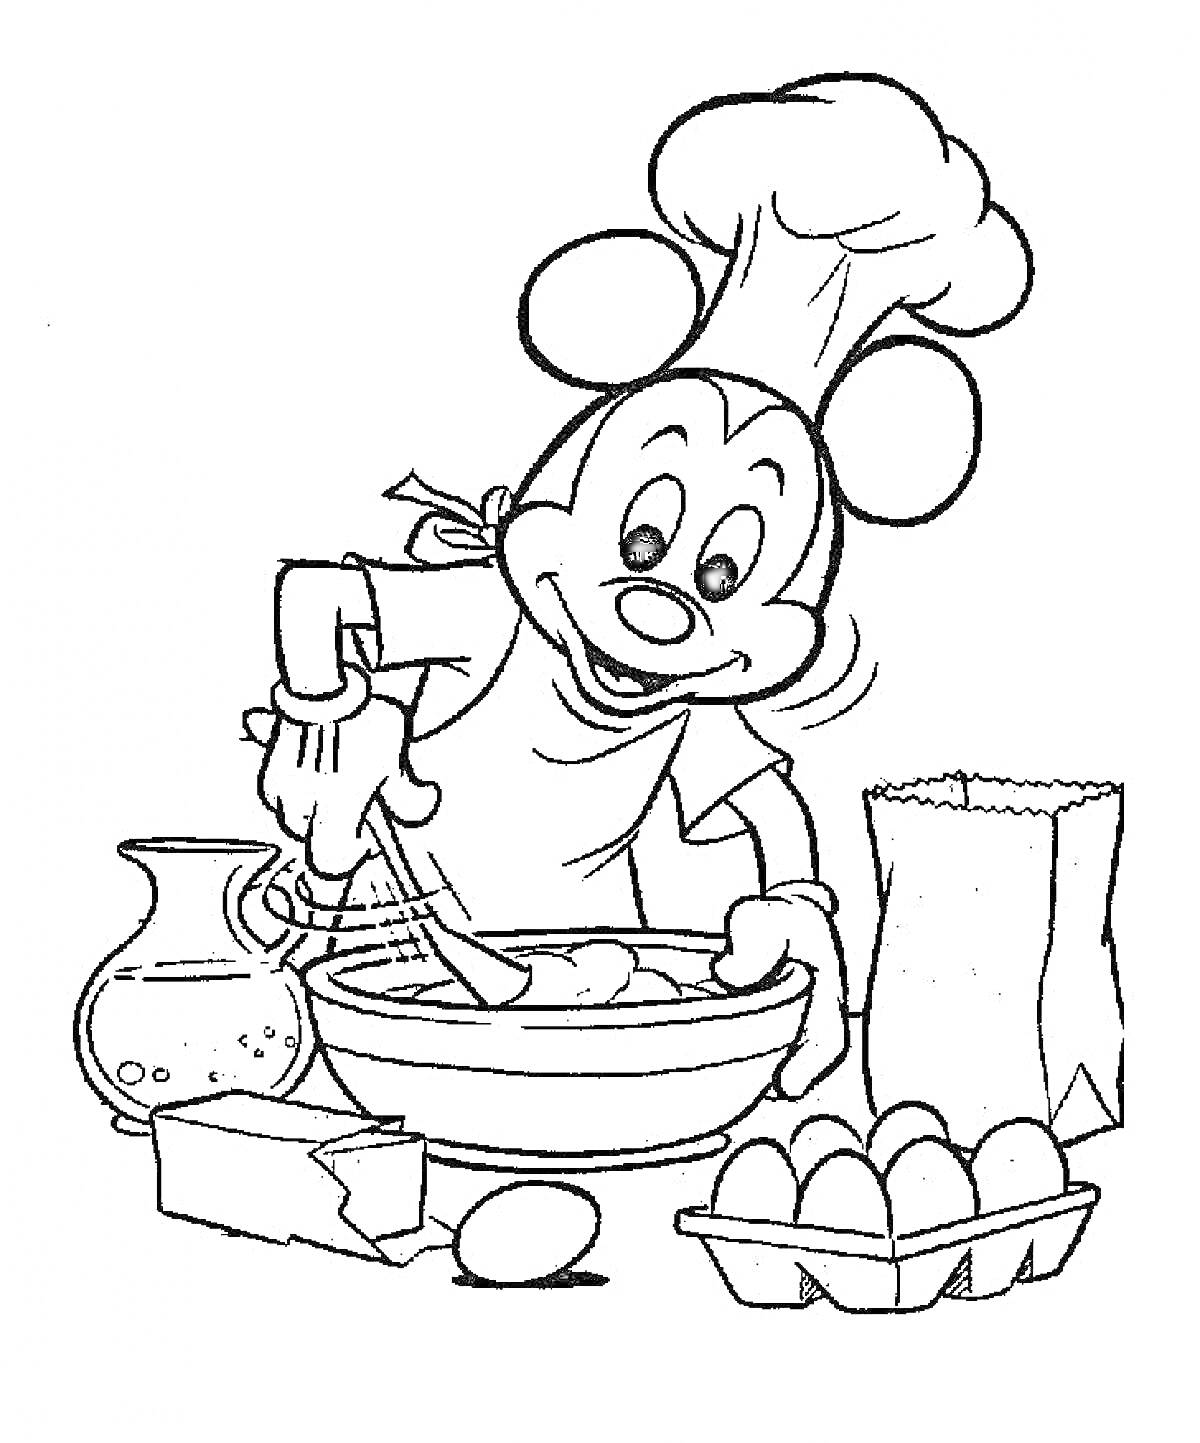 Повар-мышонок смешивает ингредиенты, стоит за столом с кувшином, яйцом, бруском масла и картонной коробкой яиц